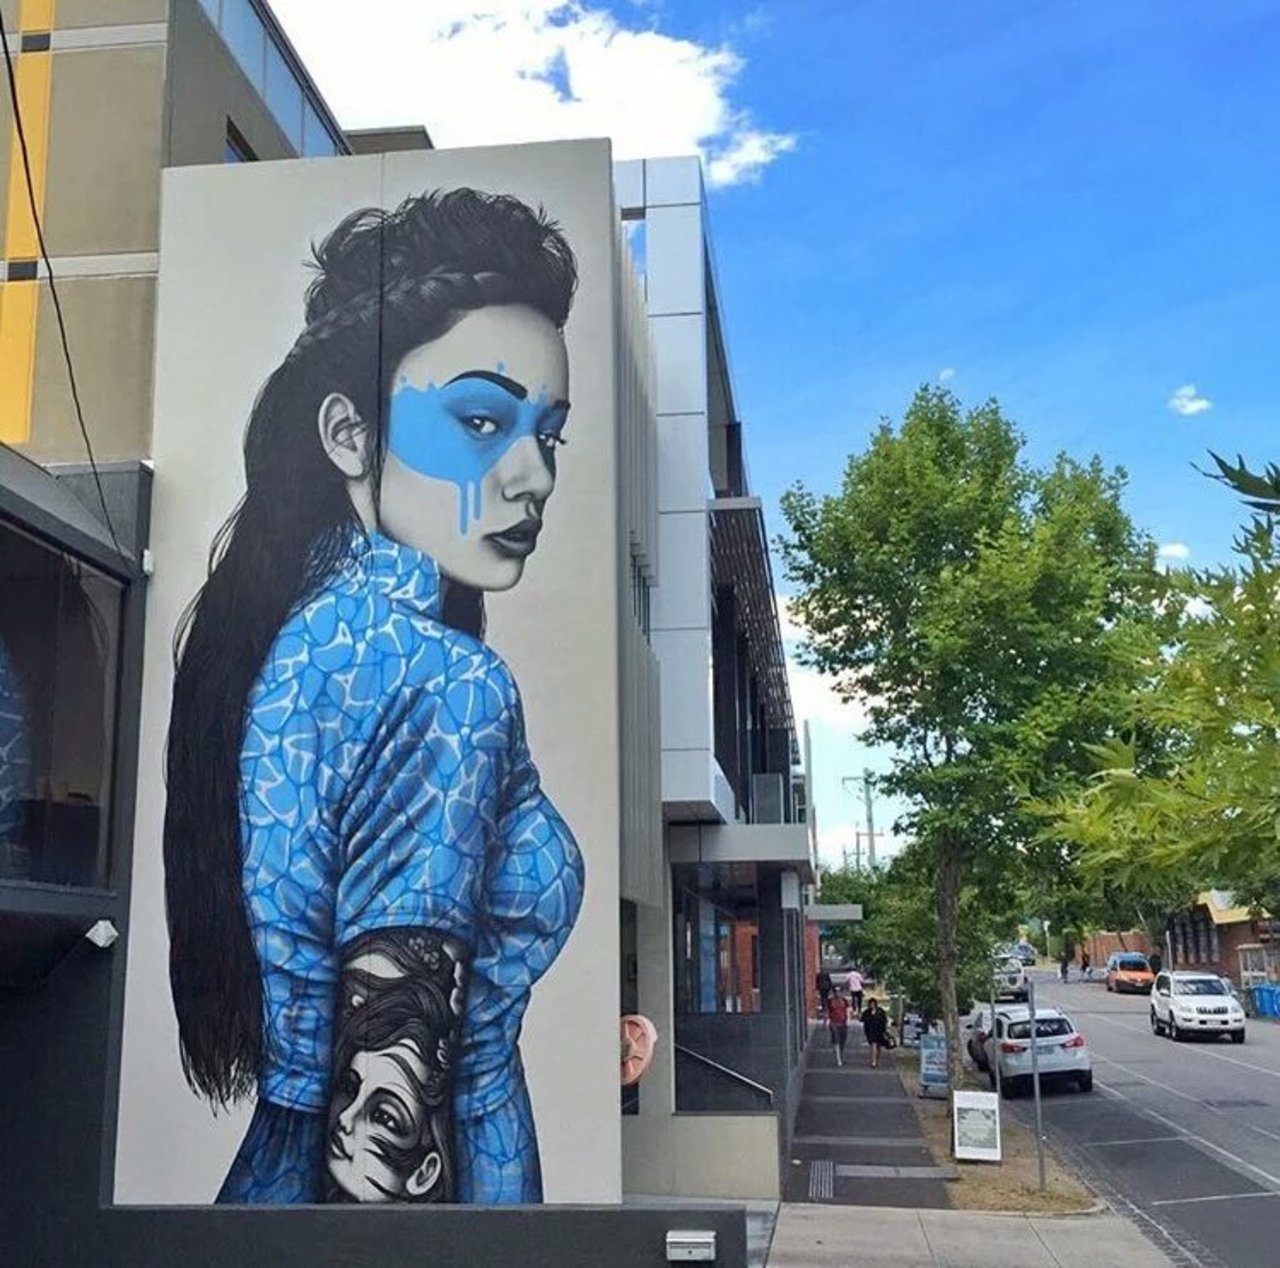 Shinoya by @findac in Melbourne #art #mural #graffiti #streetart #urbanart #design #asianpop https://t.co/sqPwzYcDNj